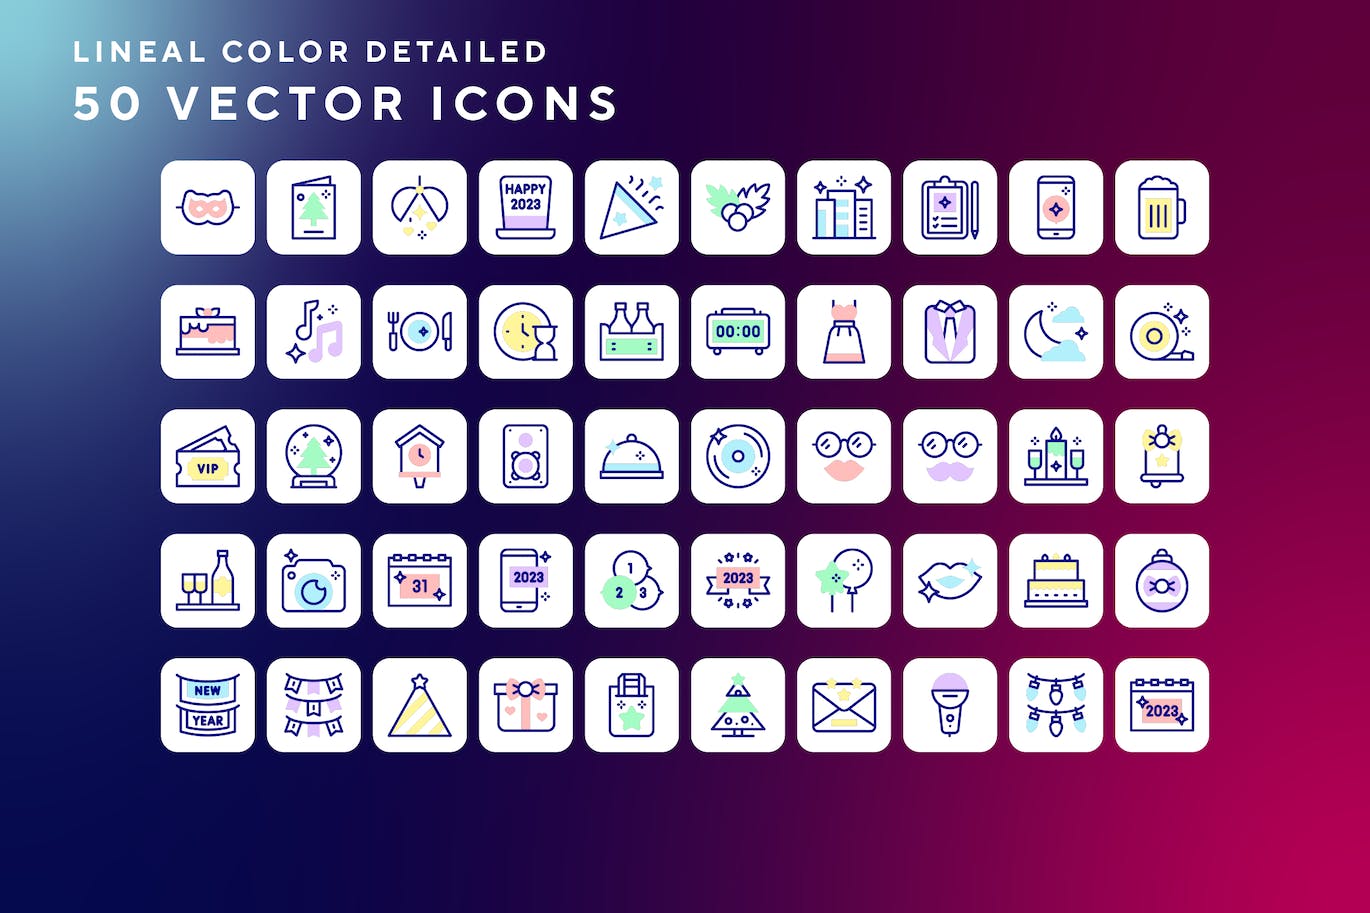 50枚新年主题彩色线条矢量图标 New year icons 图标素材 第1张